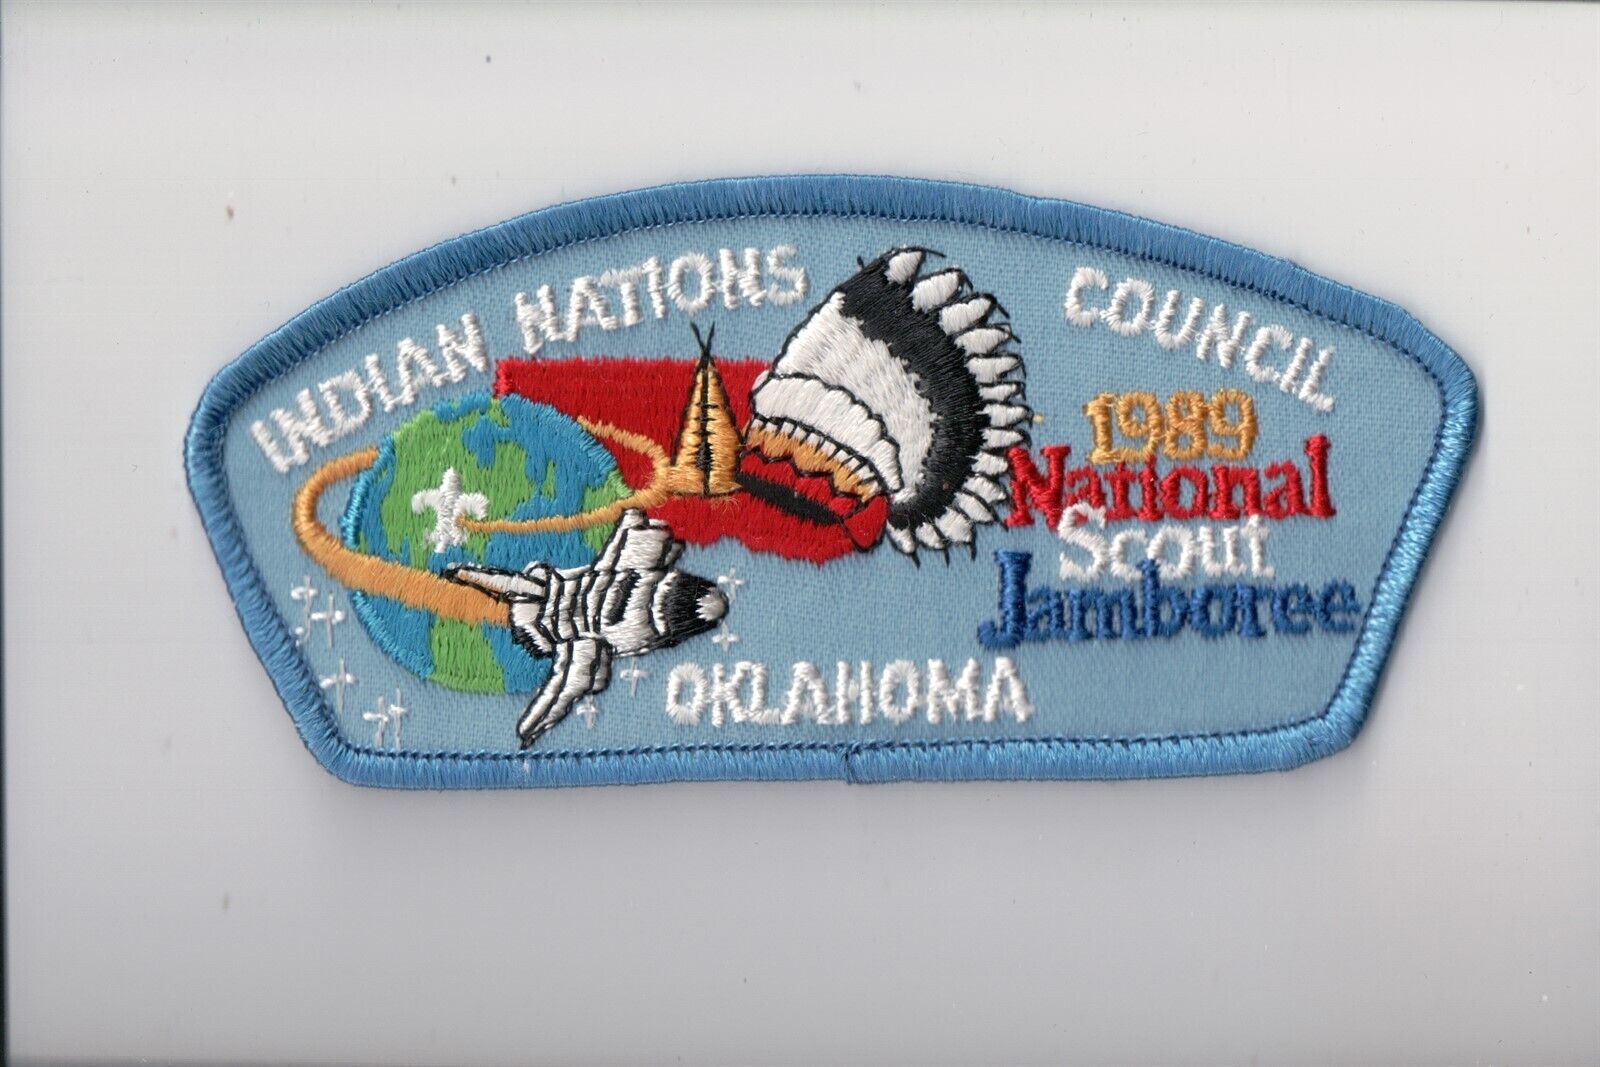 Indian Nations Council 1989 National Jamboree JSP